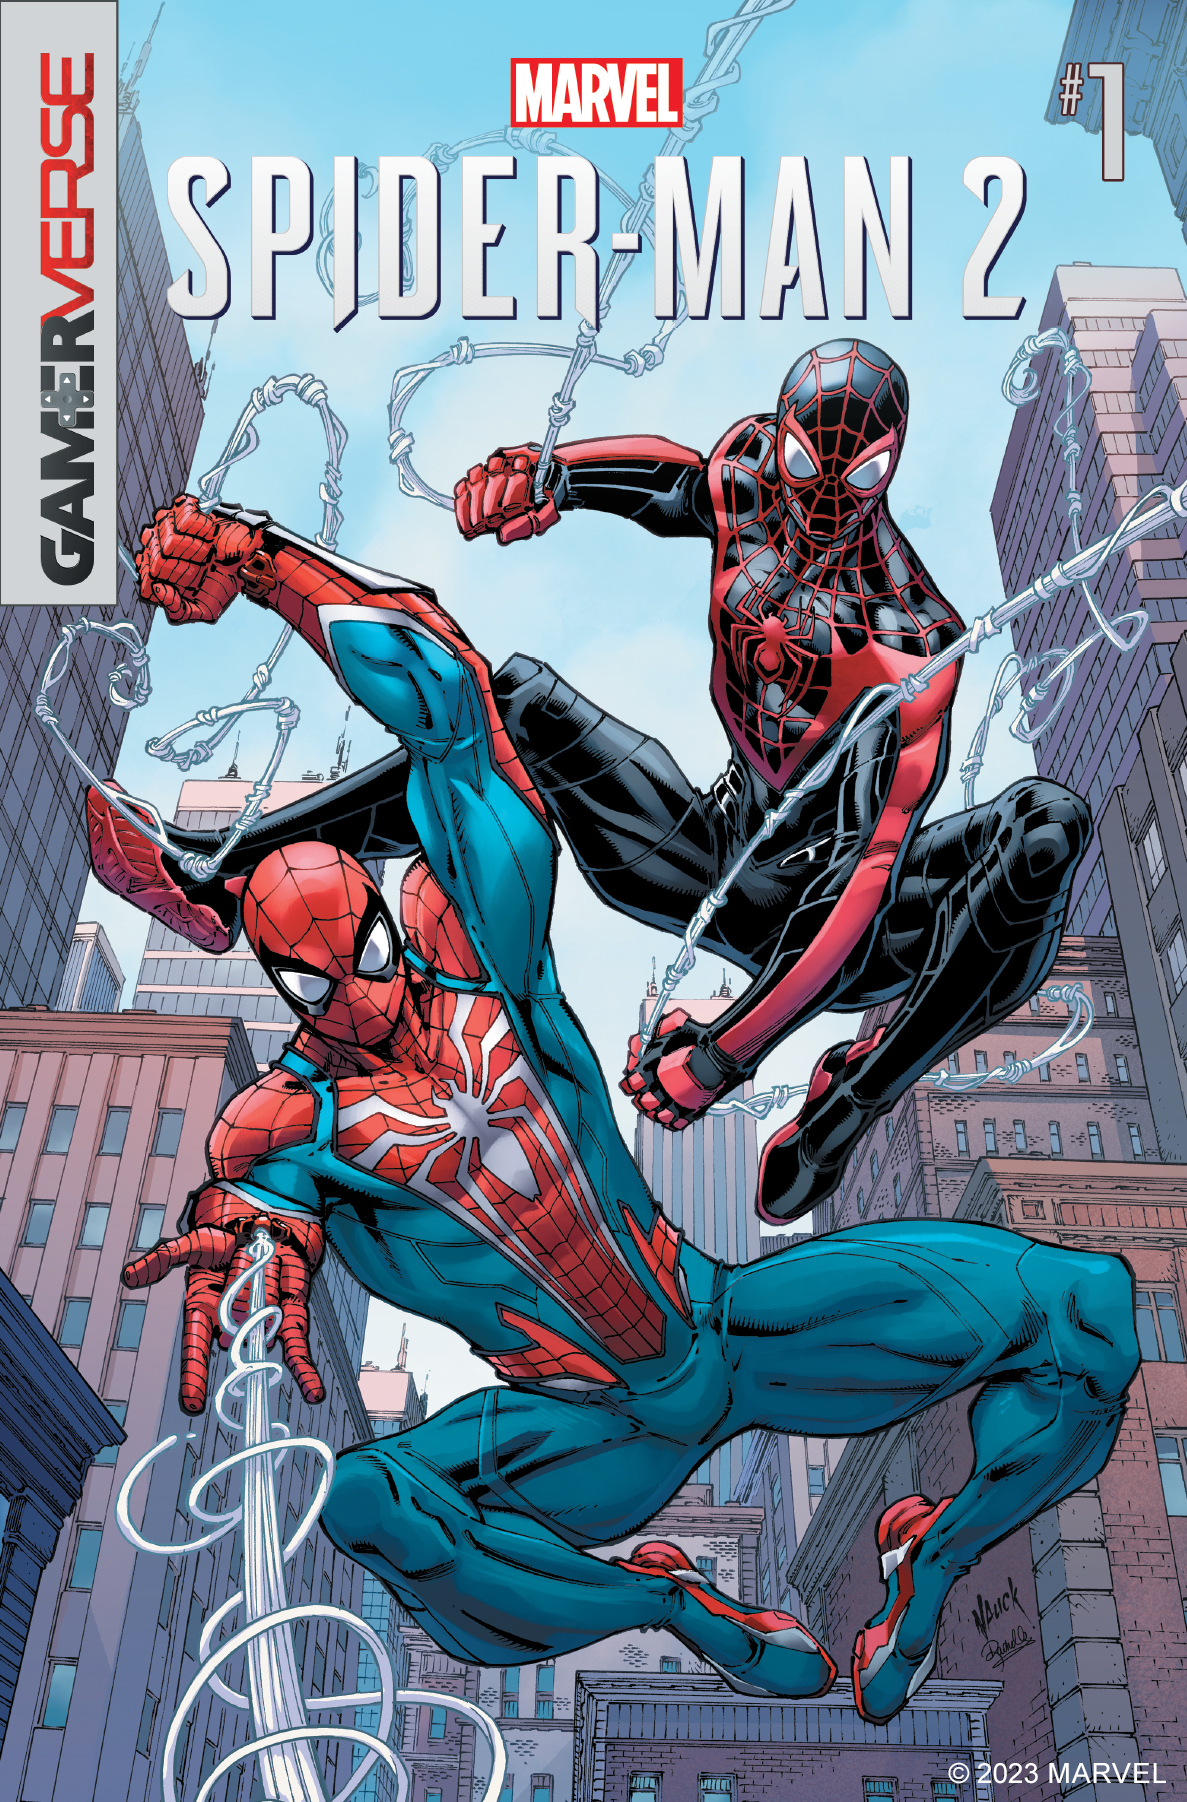 Marvel's Spider-Man Remastered ganhará versão independente na PS Store do PS5